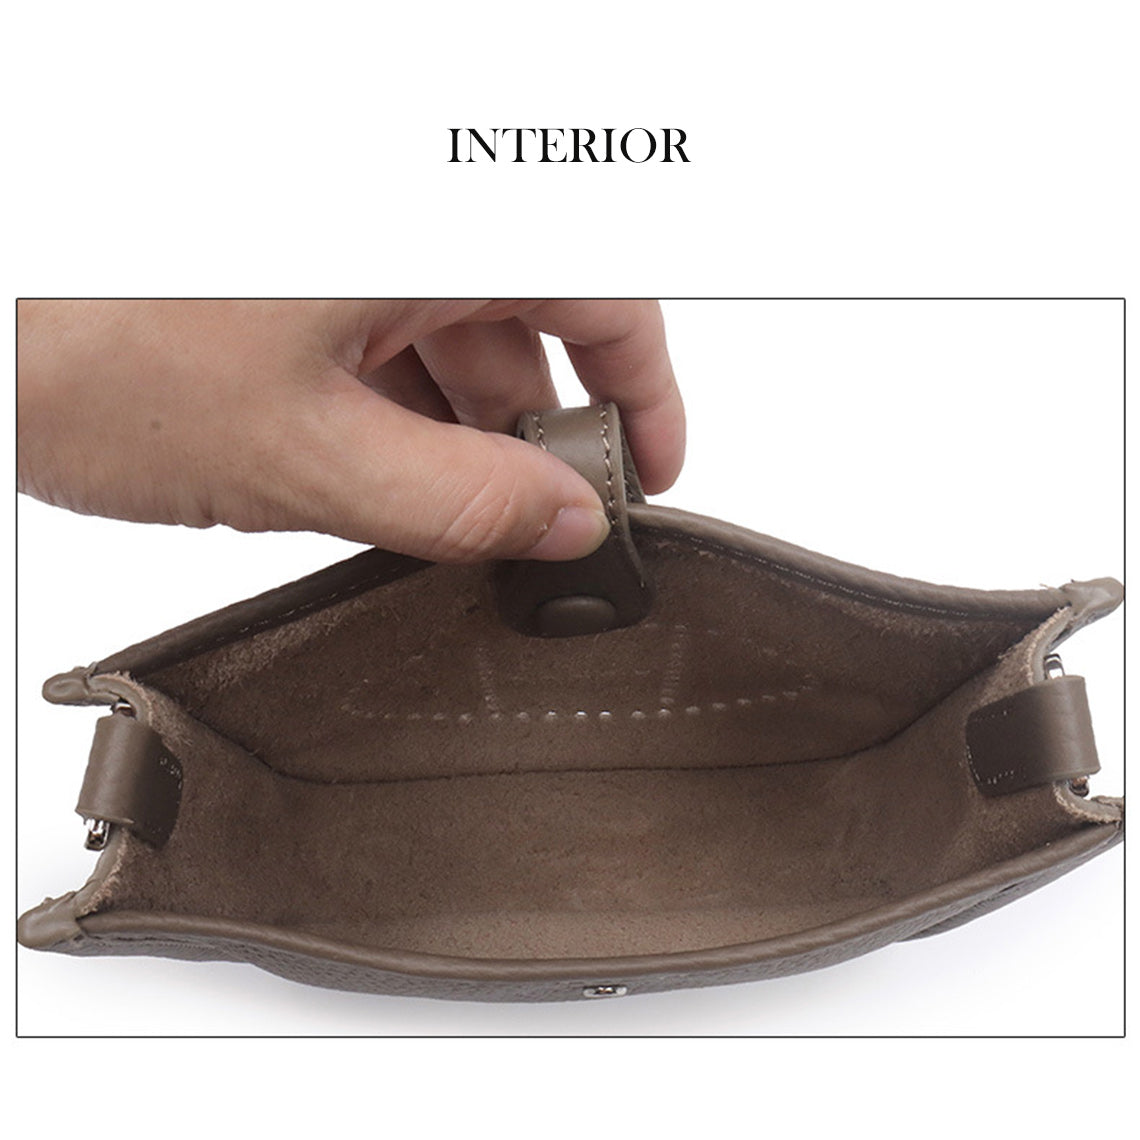 Top Grain Leather Inspired Evelyne Crossbody Bag